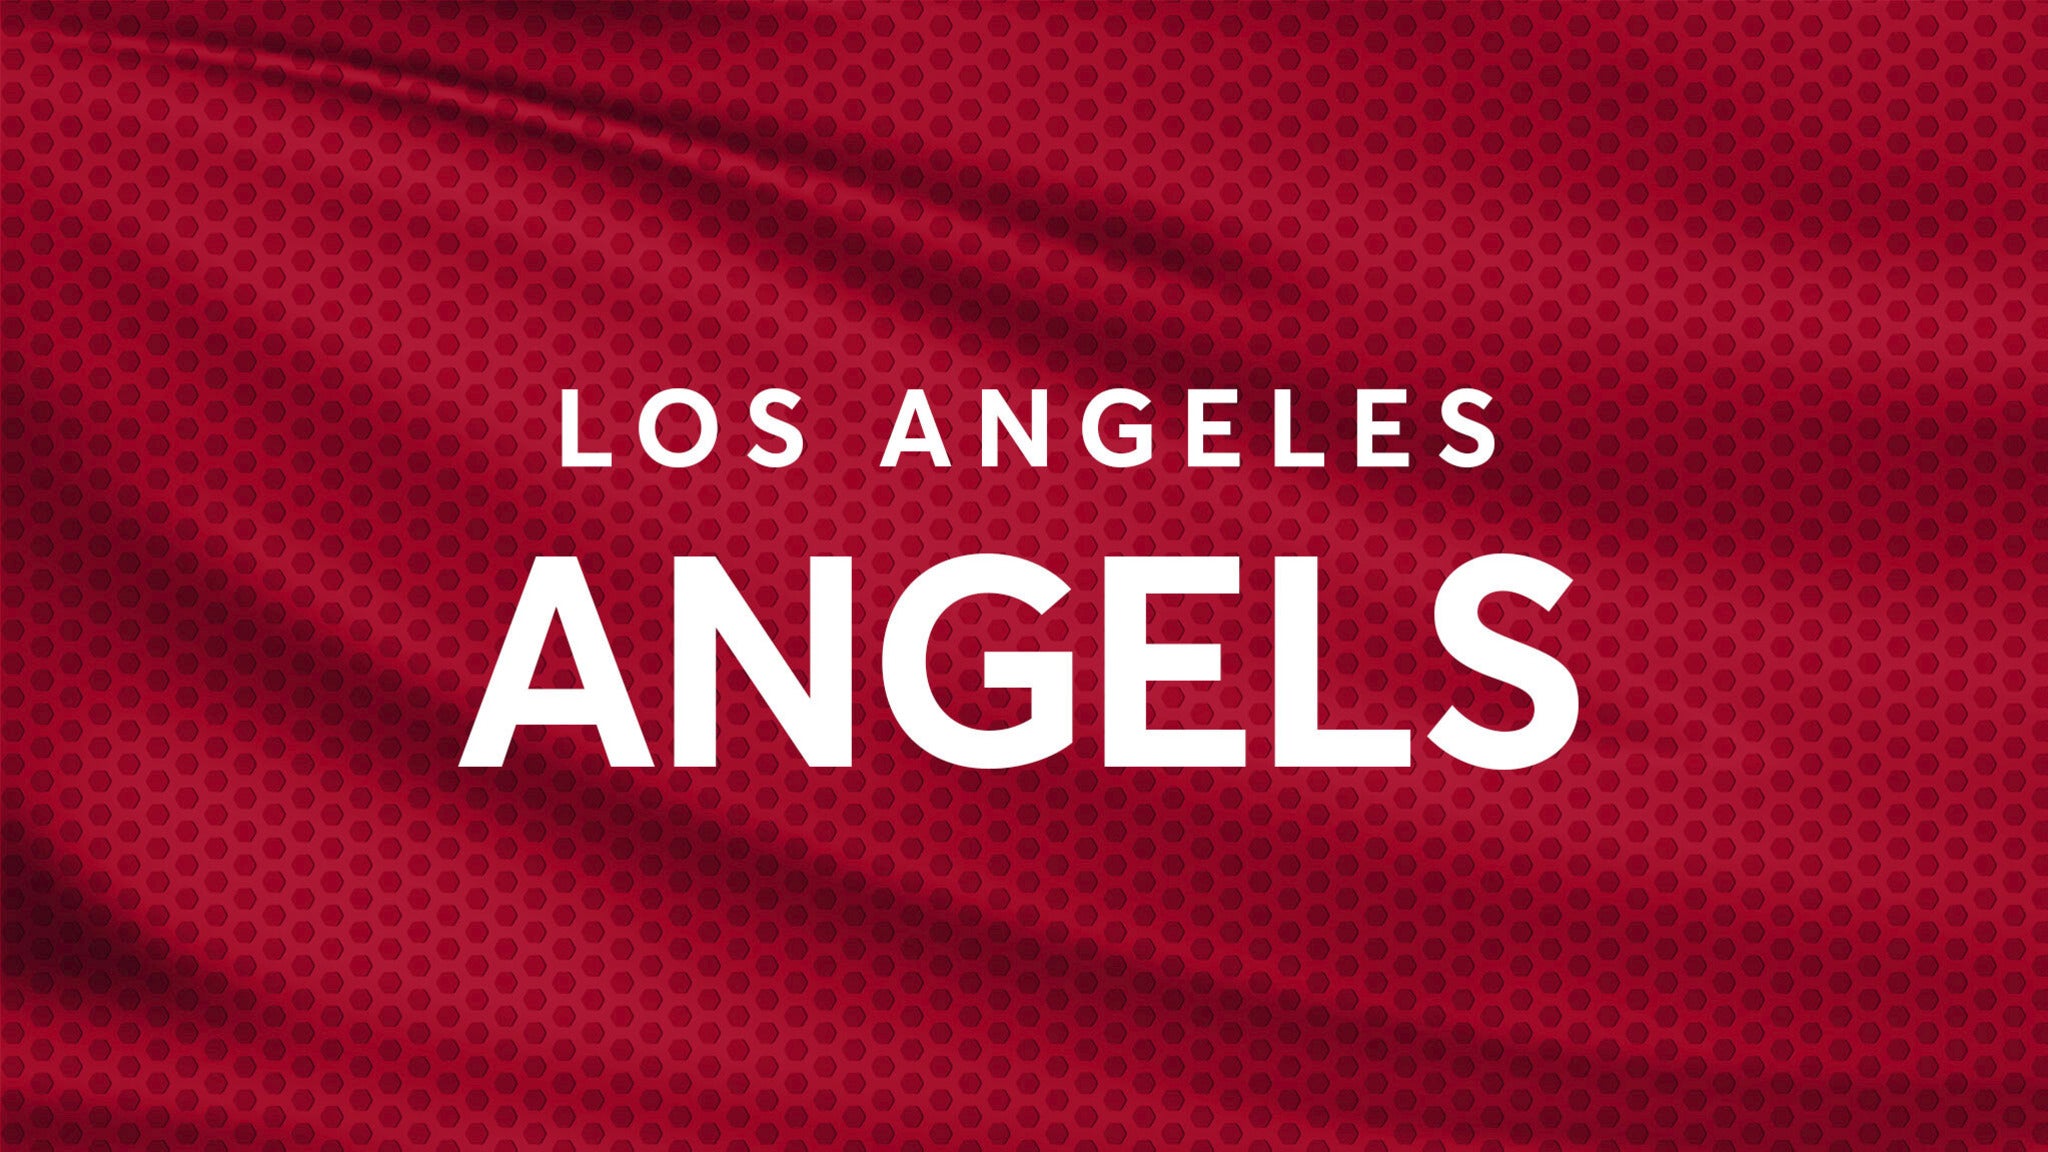 Los Angeles Angels vs. San Diego Padres